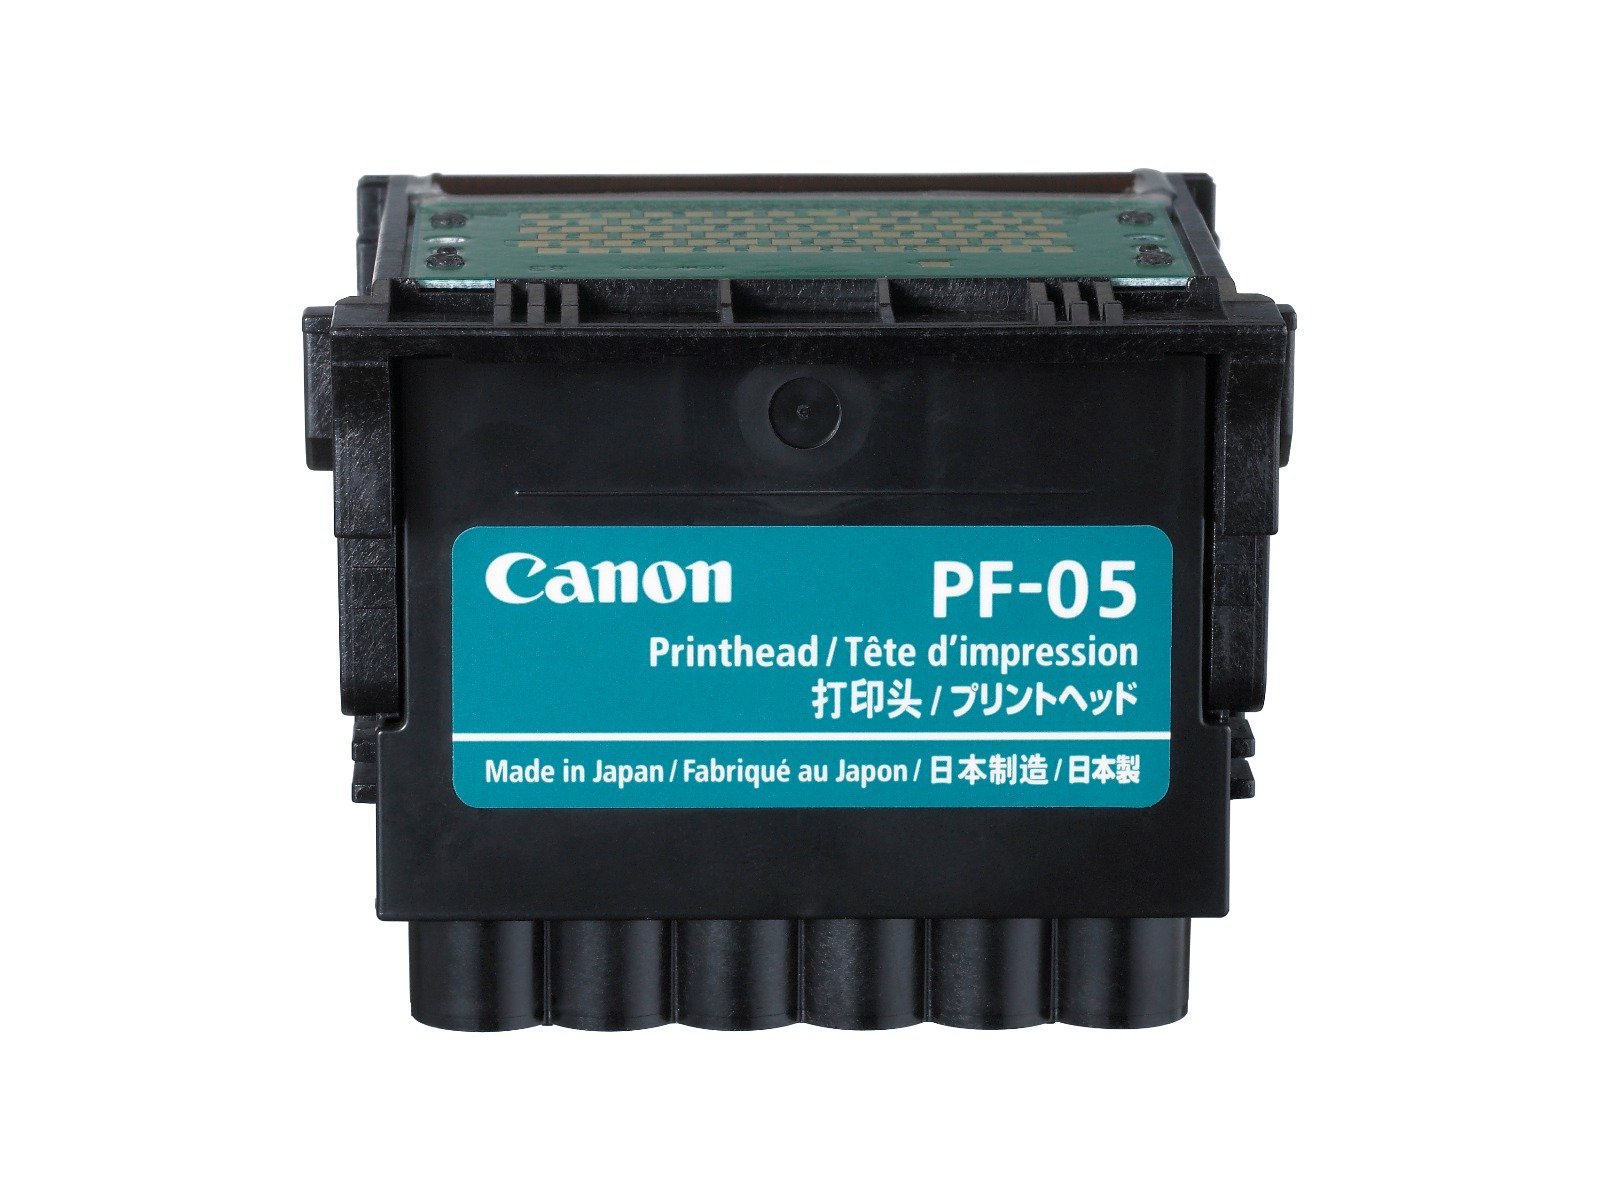 Печатающая головка Canon PF-05 печатающая головка canon pf 05 чёрный